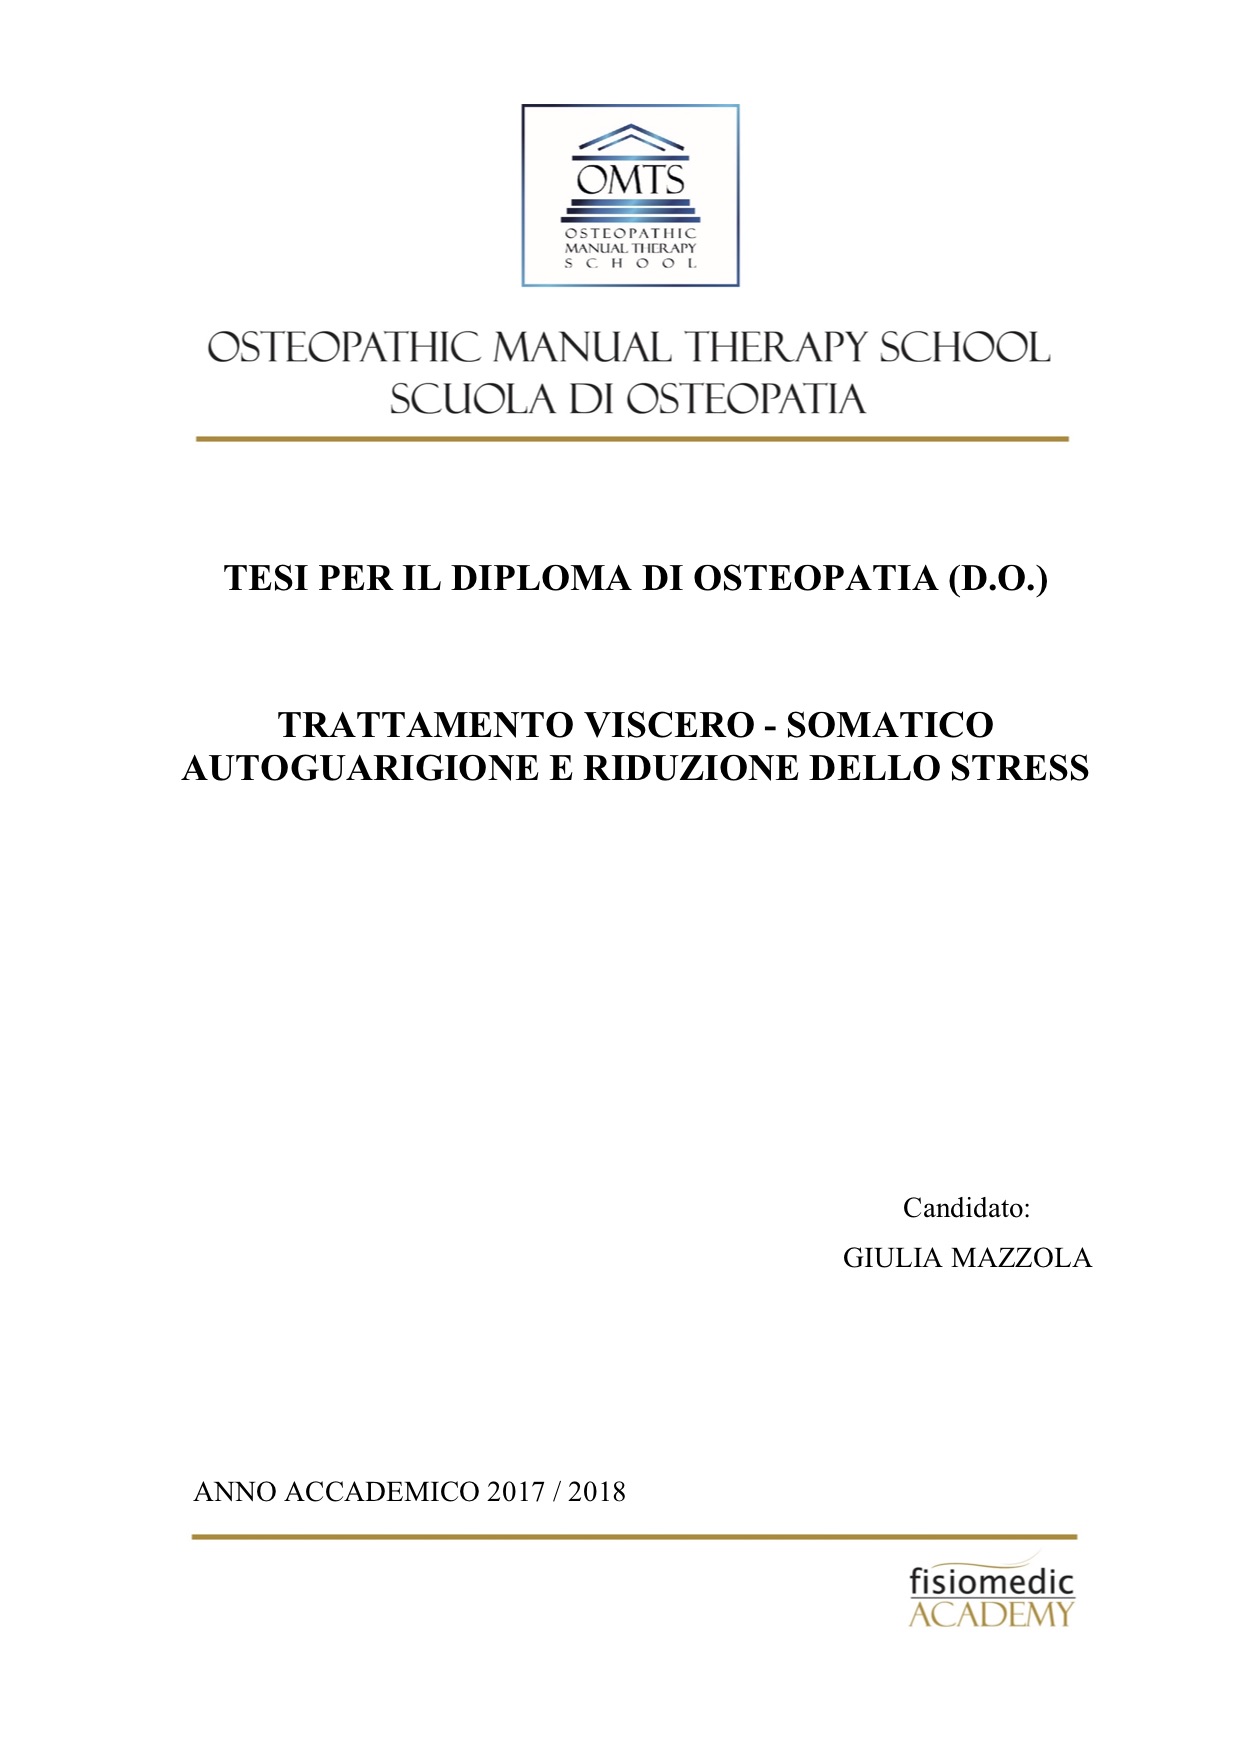 Giulia Mazzola Tesi Diploma Osteopatia 2018